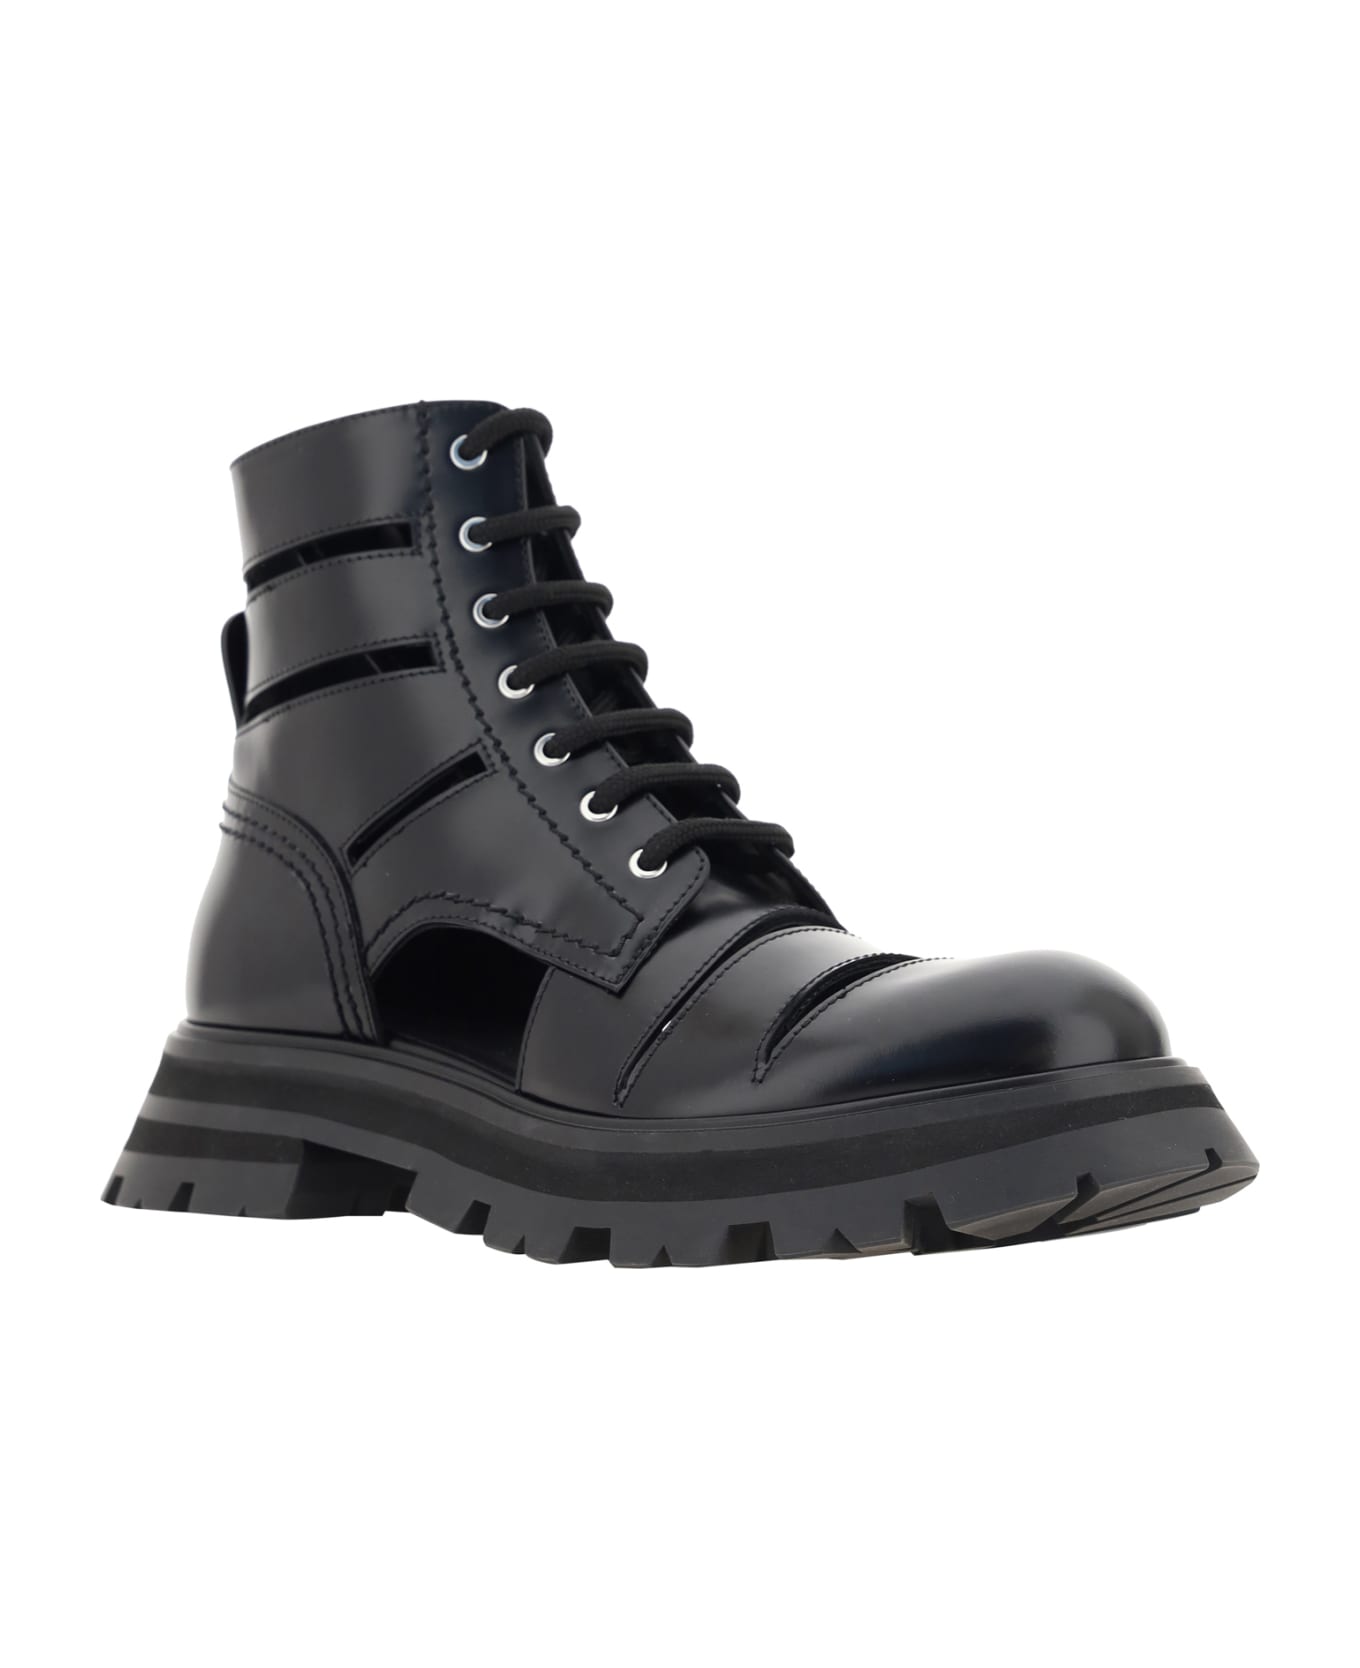 Alexander McQueen Wander Combat Boots - Black